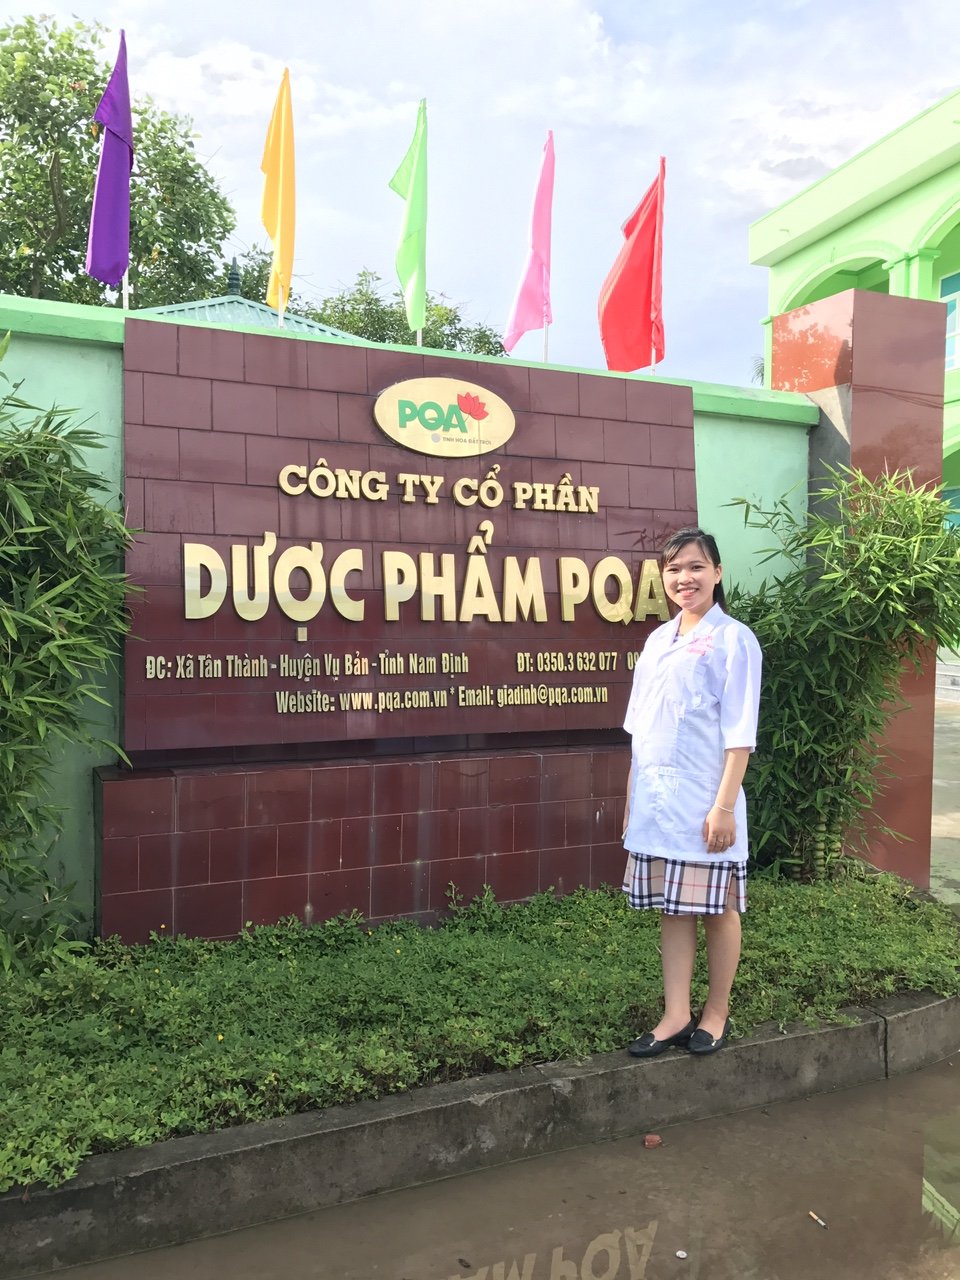 Vượt qua số phận: Thoát khỏi căn bệnh COPD Tây y bó tay của chú Tĩnh ở Bắc Ninh